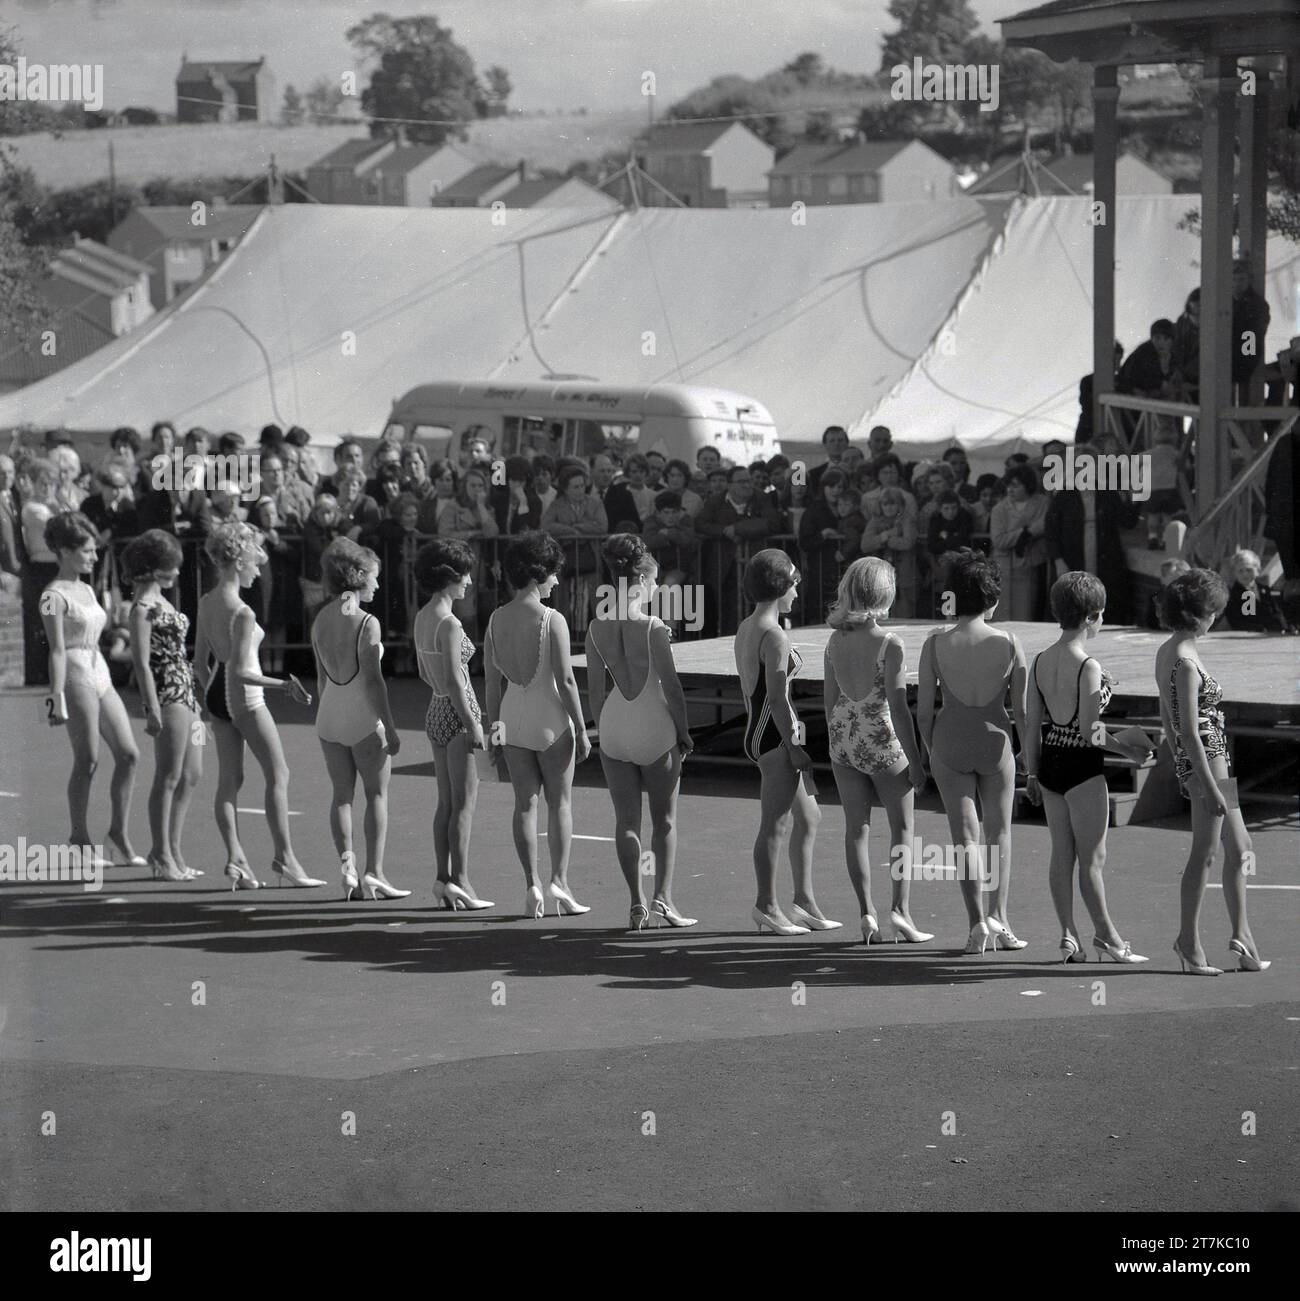 Années 1960, historiques, concurrentes féminines dans un line-up de compétition de reine de beauté dehors dans leurs maillots de bain, Angleterre, Royaume-Uni. Banque D'Images